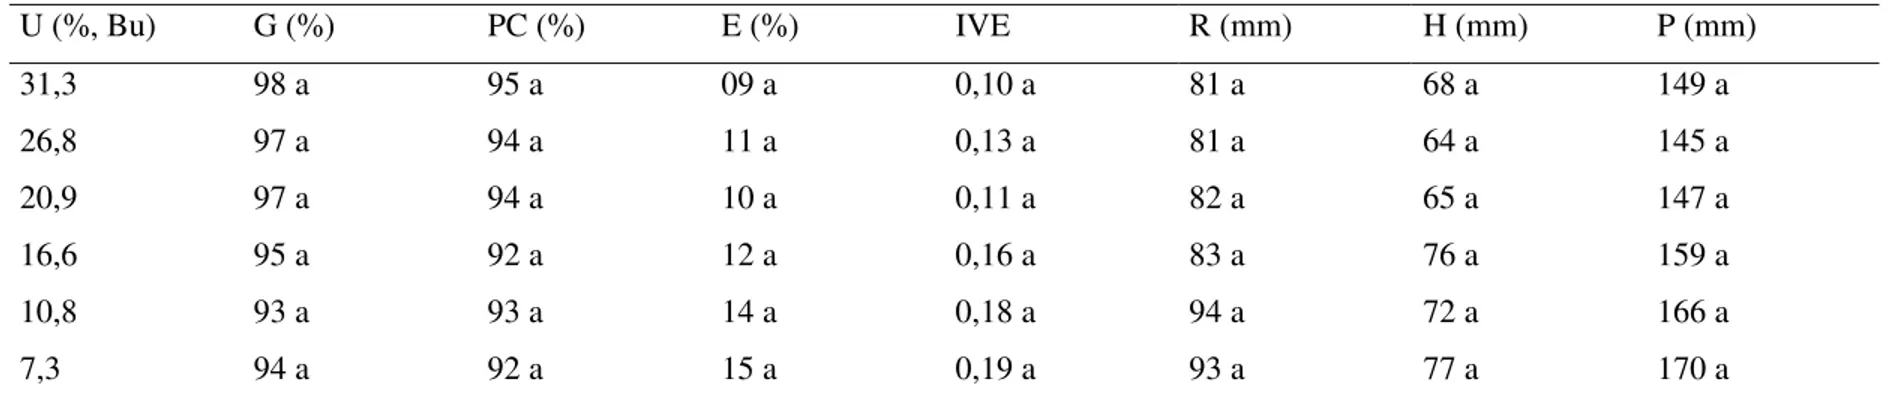 Tabela 4. Teor de água (U), germinação (G), primeira contagem de germinação (PC), emergência de plântula (E), índice de  velocidade de emergência de plântula (IVE), comprimento de raiz (R), comprimento de hipocótilo (H) e comprimento  de plântula (P) em se